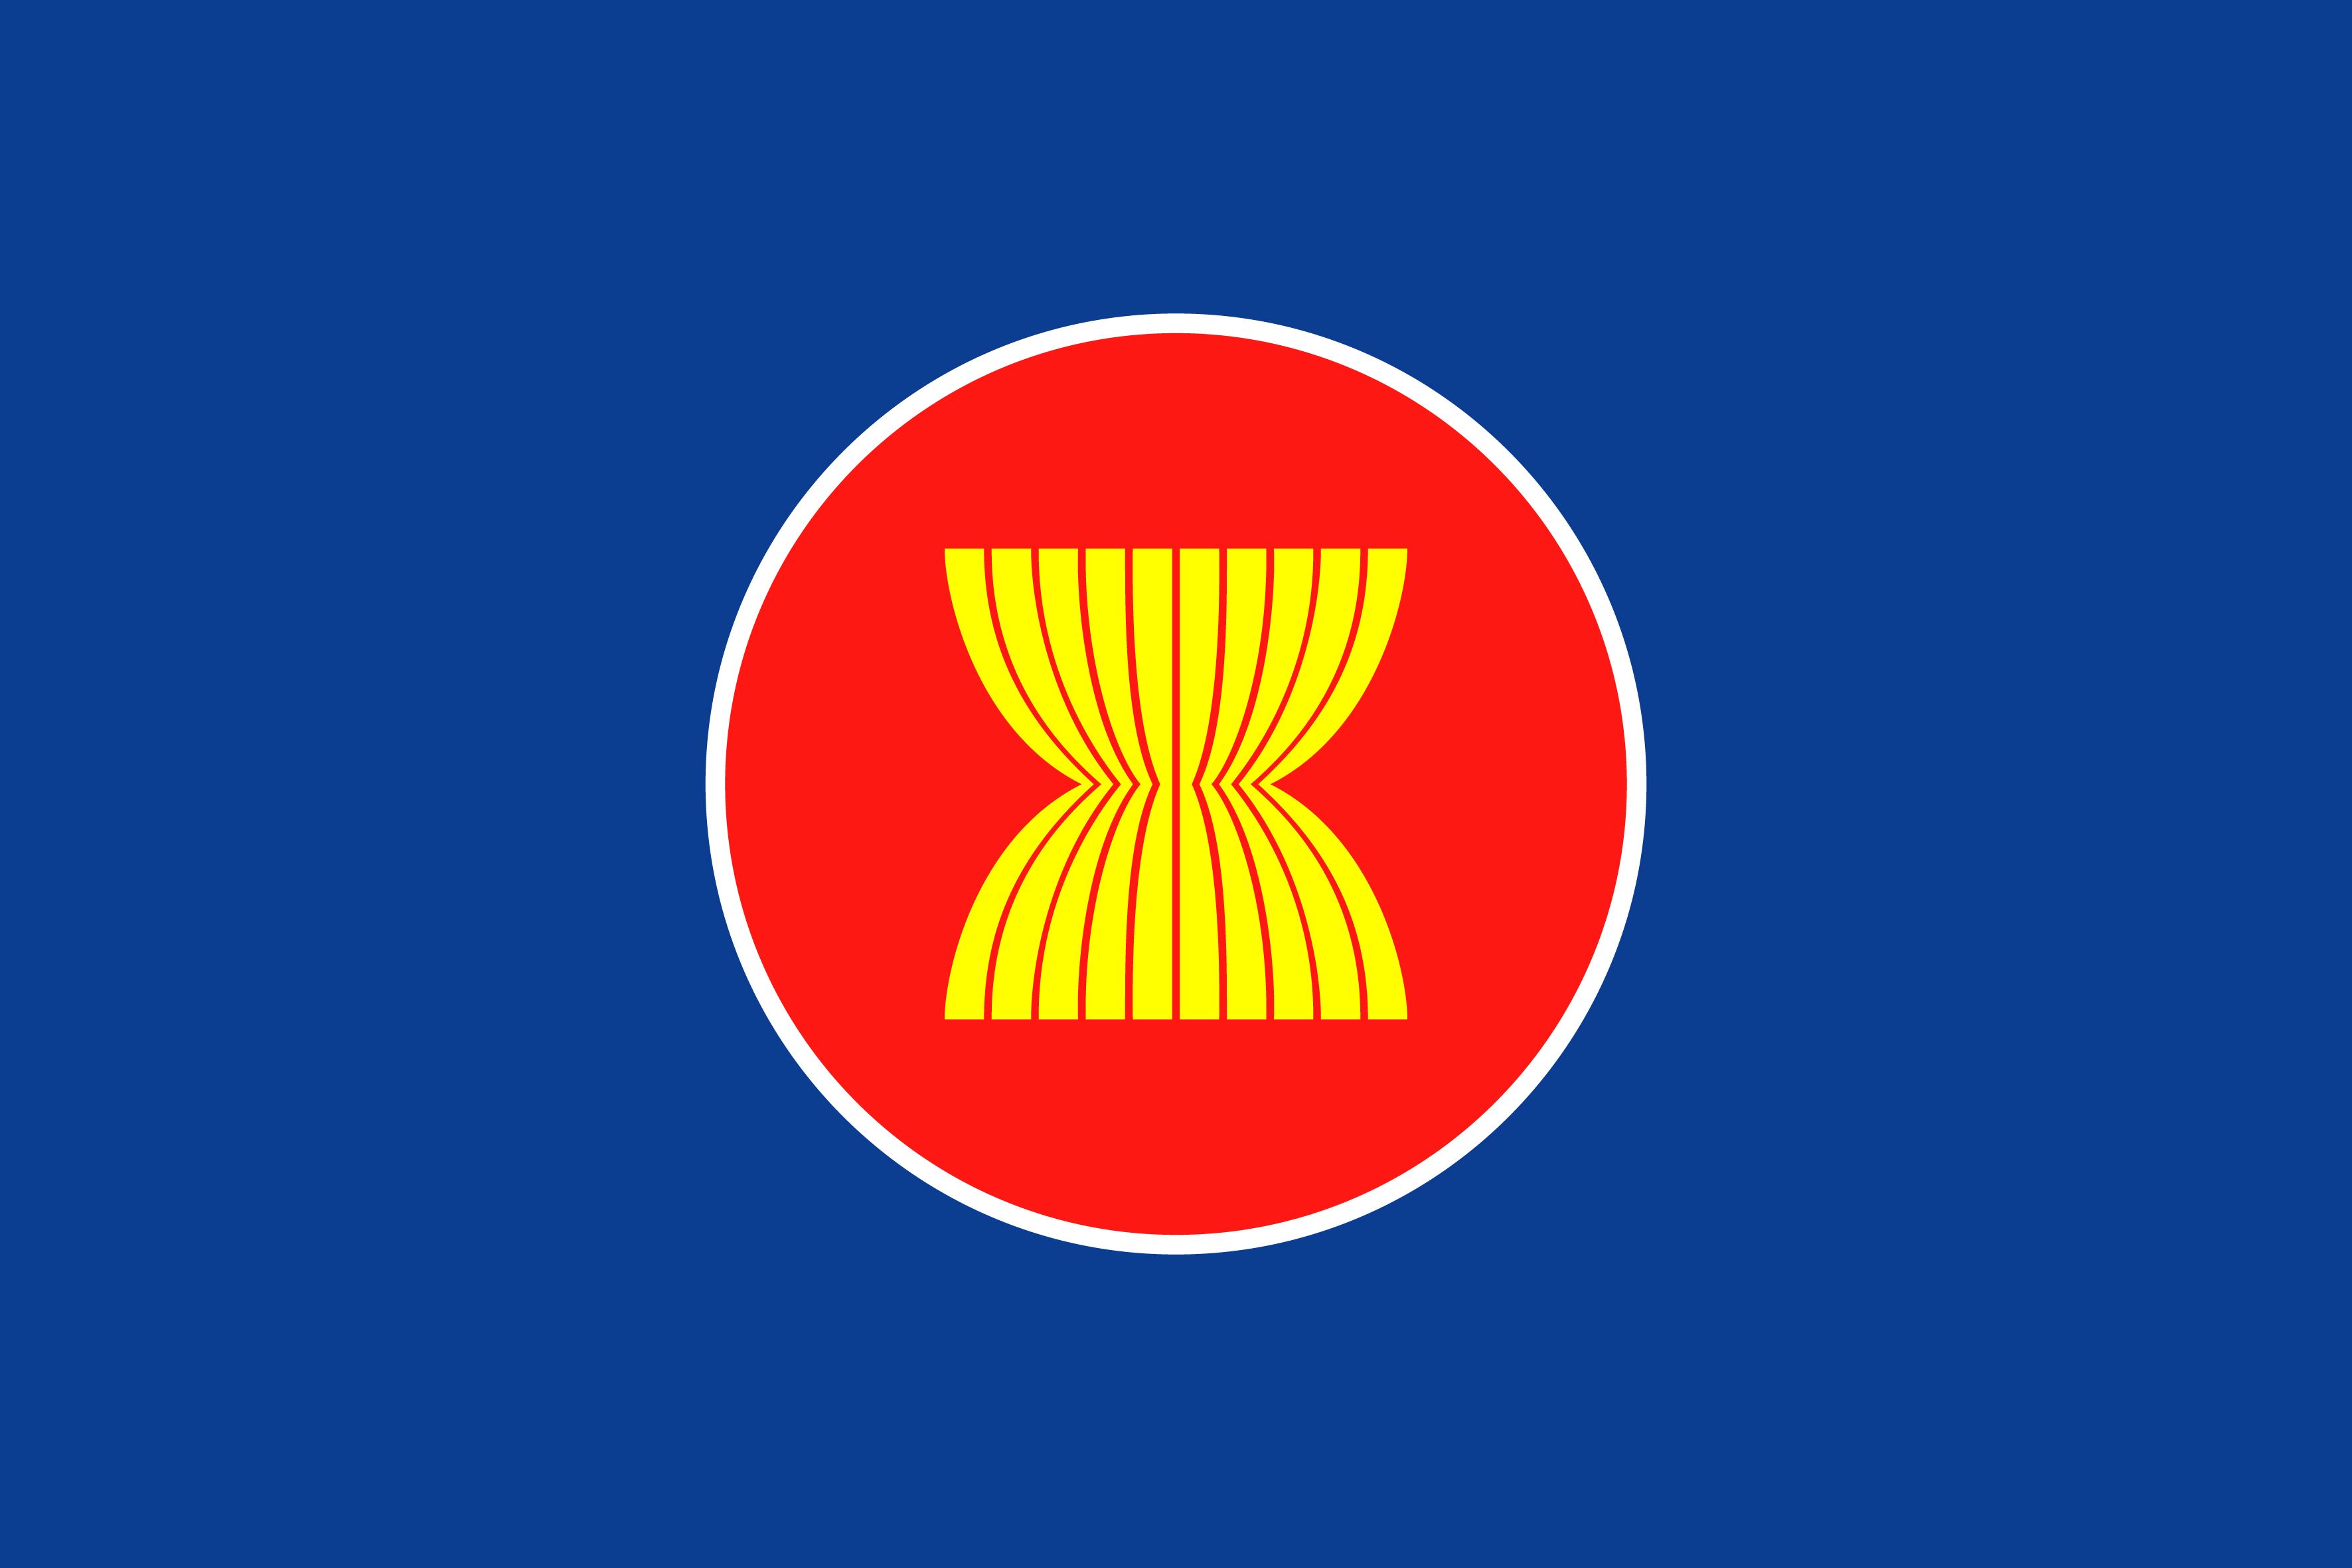 Năm 1999, quốc gia nào trở thành thành viên thứ 6 của ASEAN?
